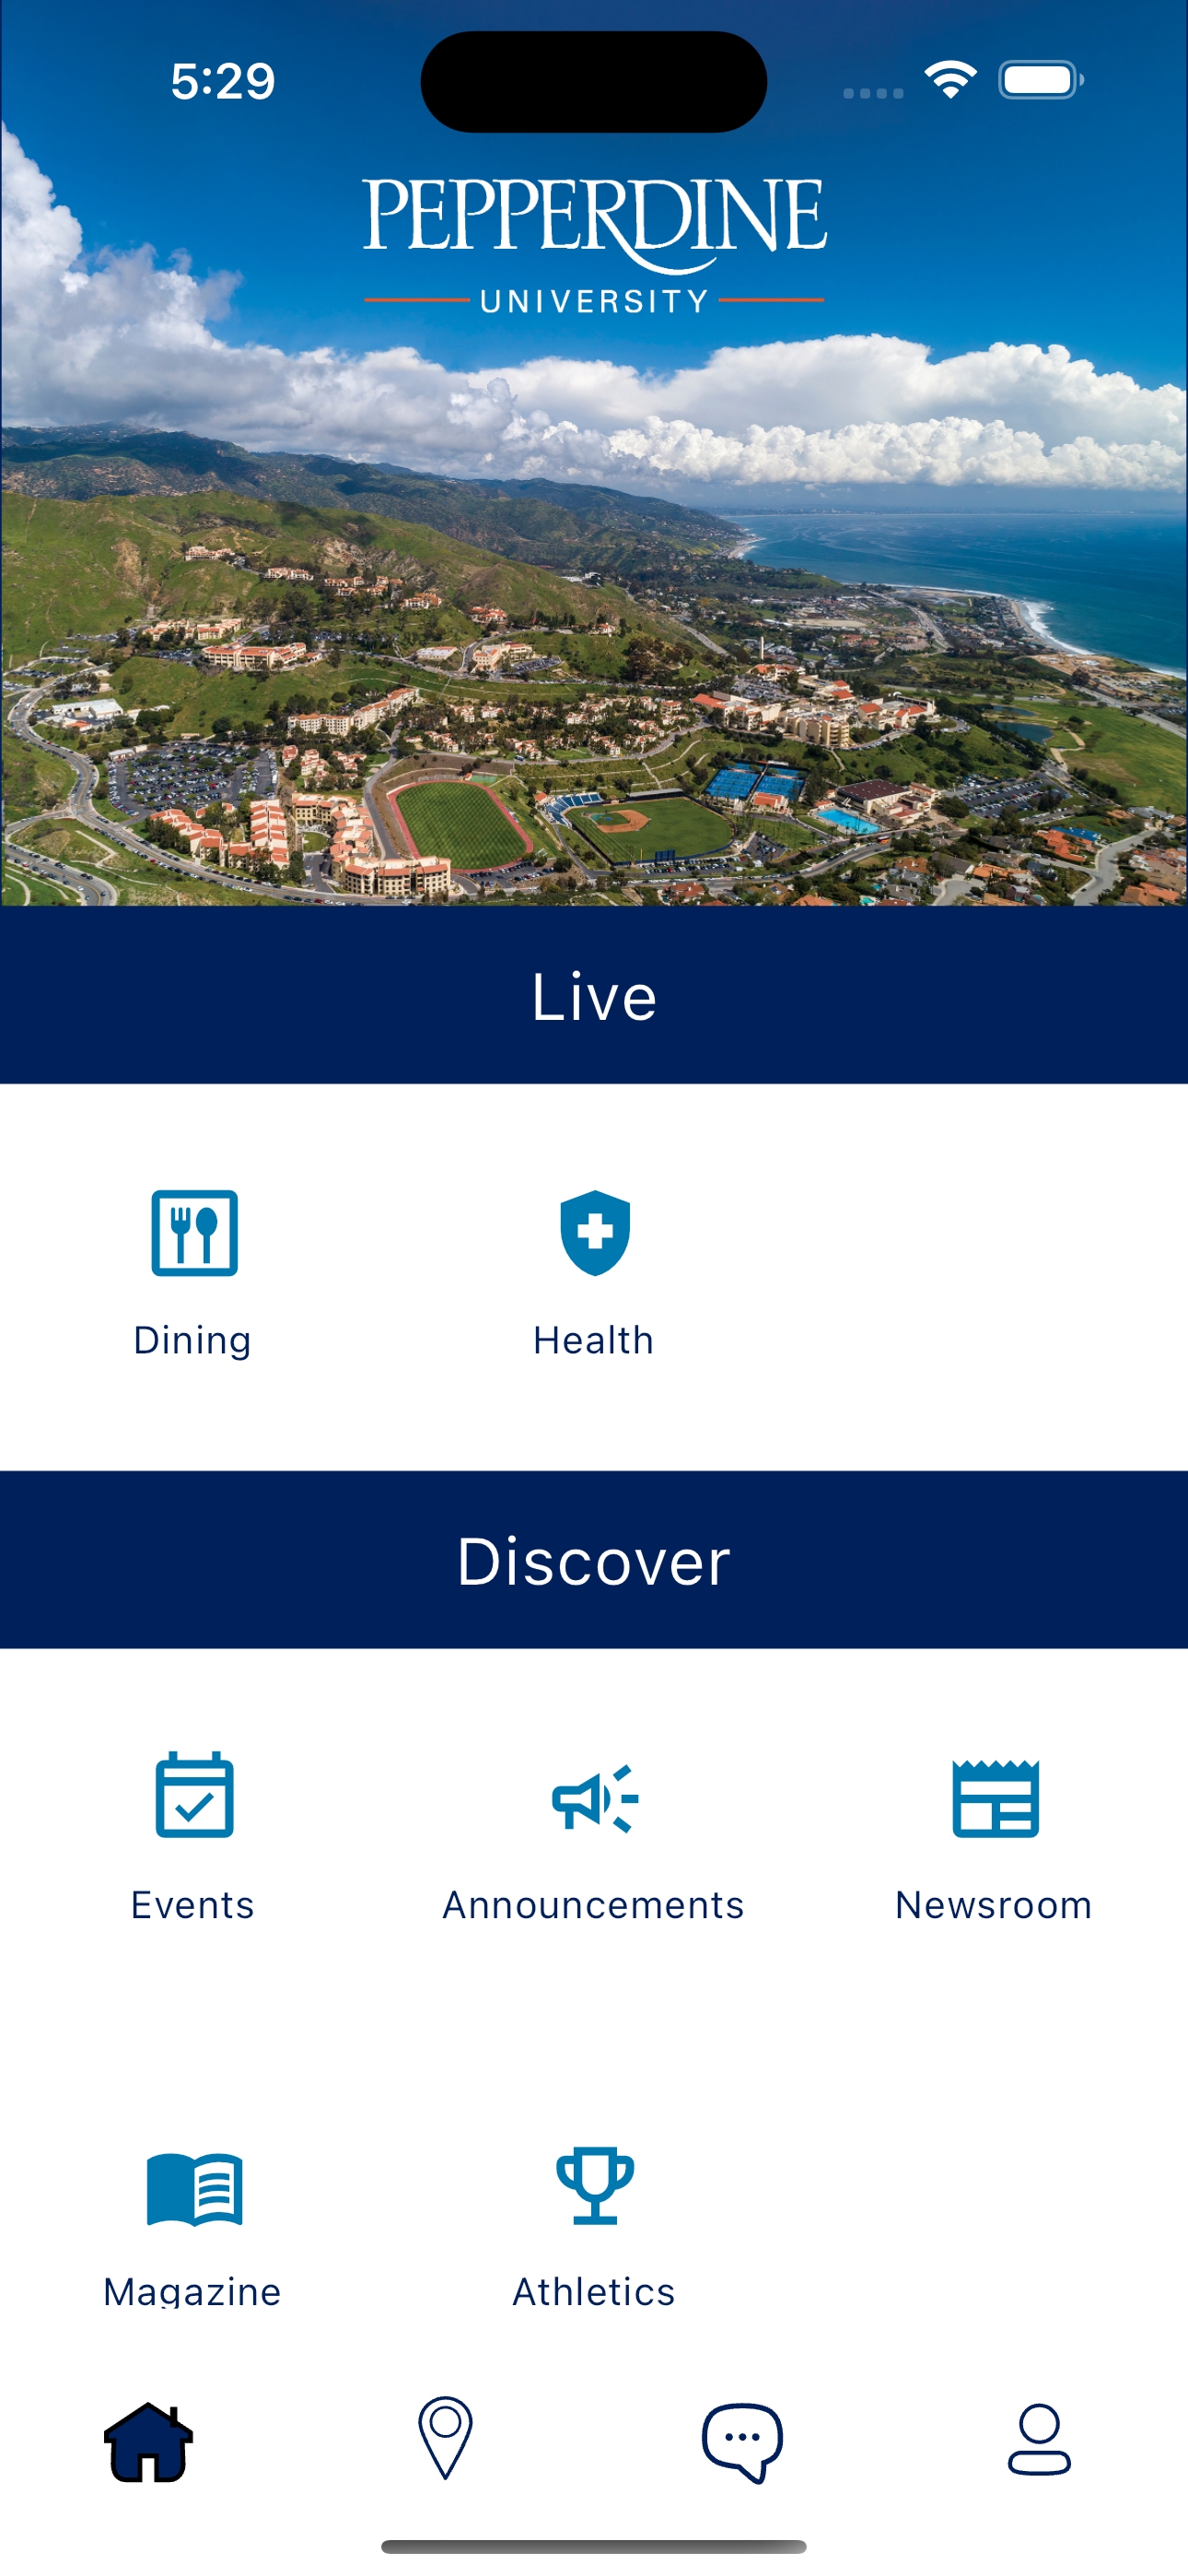 Pepperdine University Mobile App Home Screen